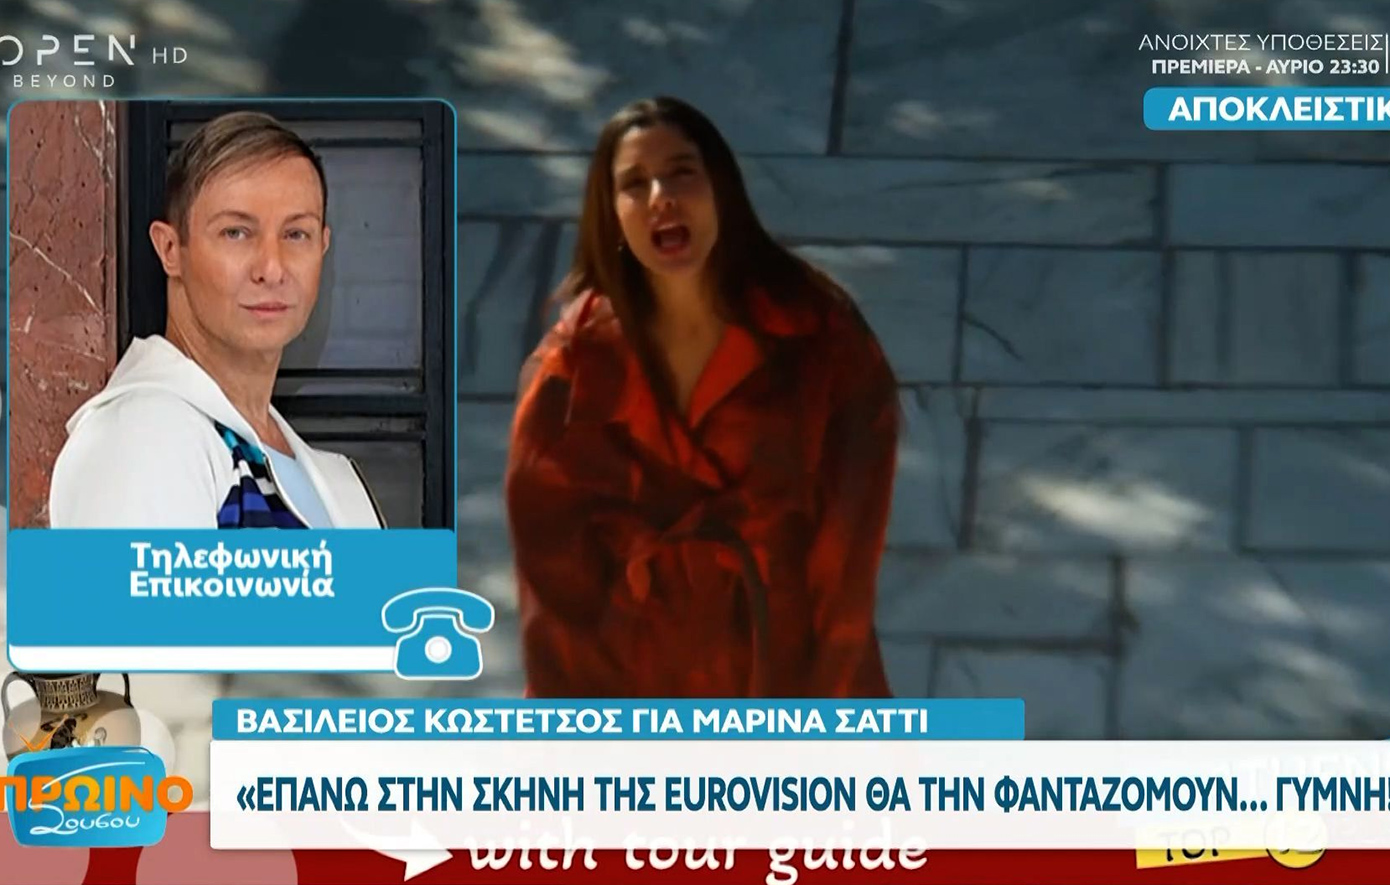 Βασίλειος Κωστέτσος για Μαρίνα Σάττι: Επάνω στη σκηνή της Eurovision θα τη φανταζόμουν γυμνή